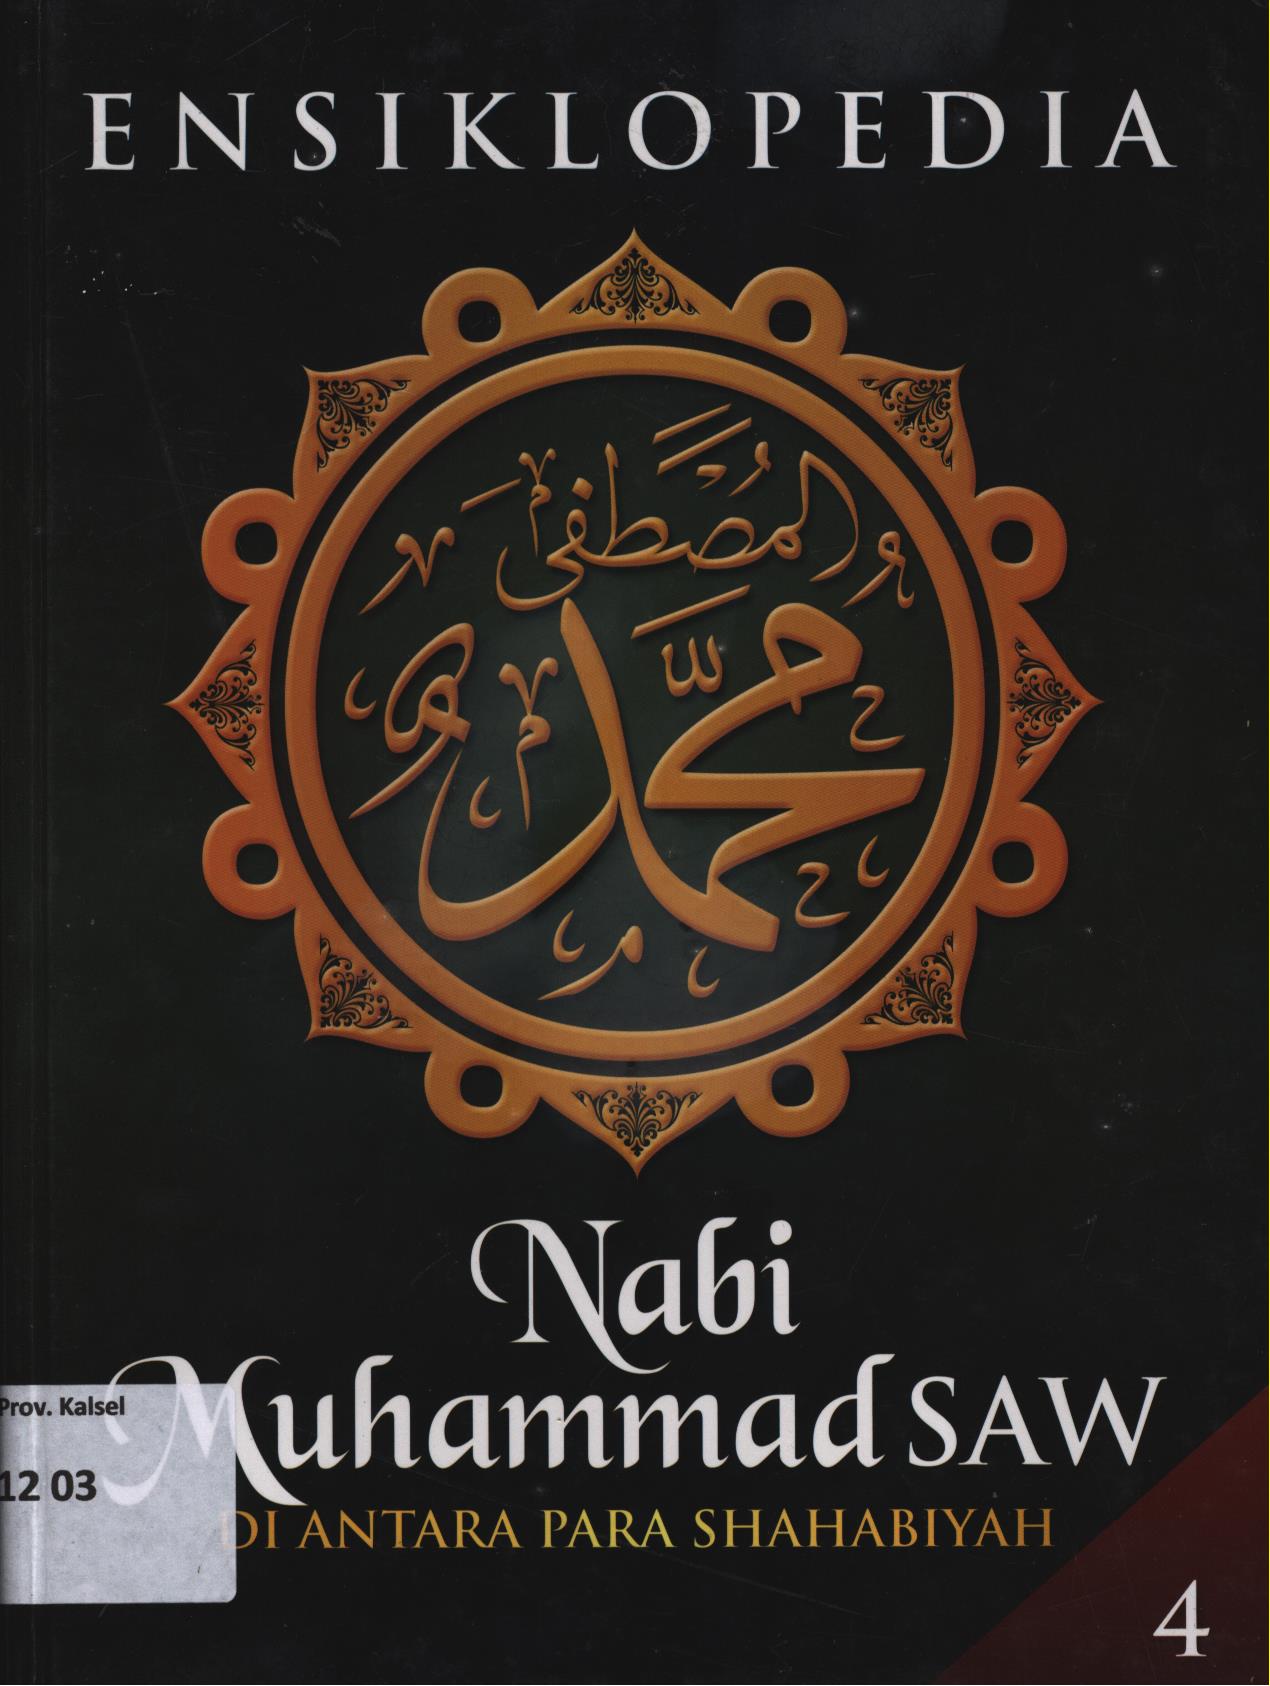 Ensiklopedia Nabi Muhammad SAW Jilid 4 :  di antara para shahabiyah